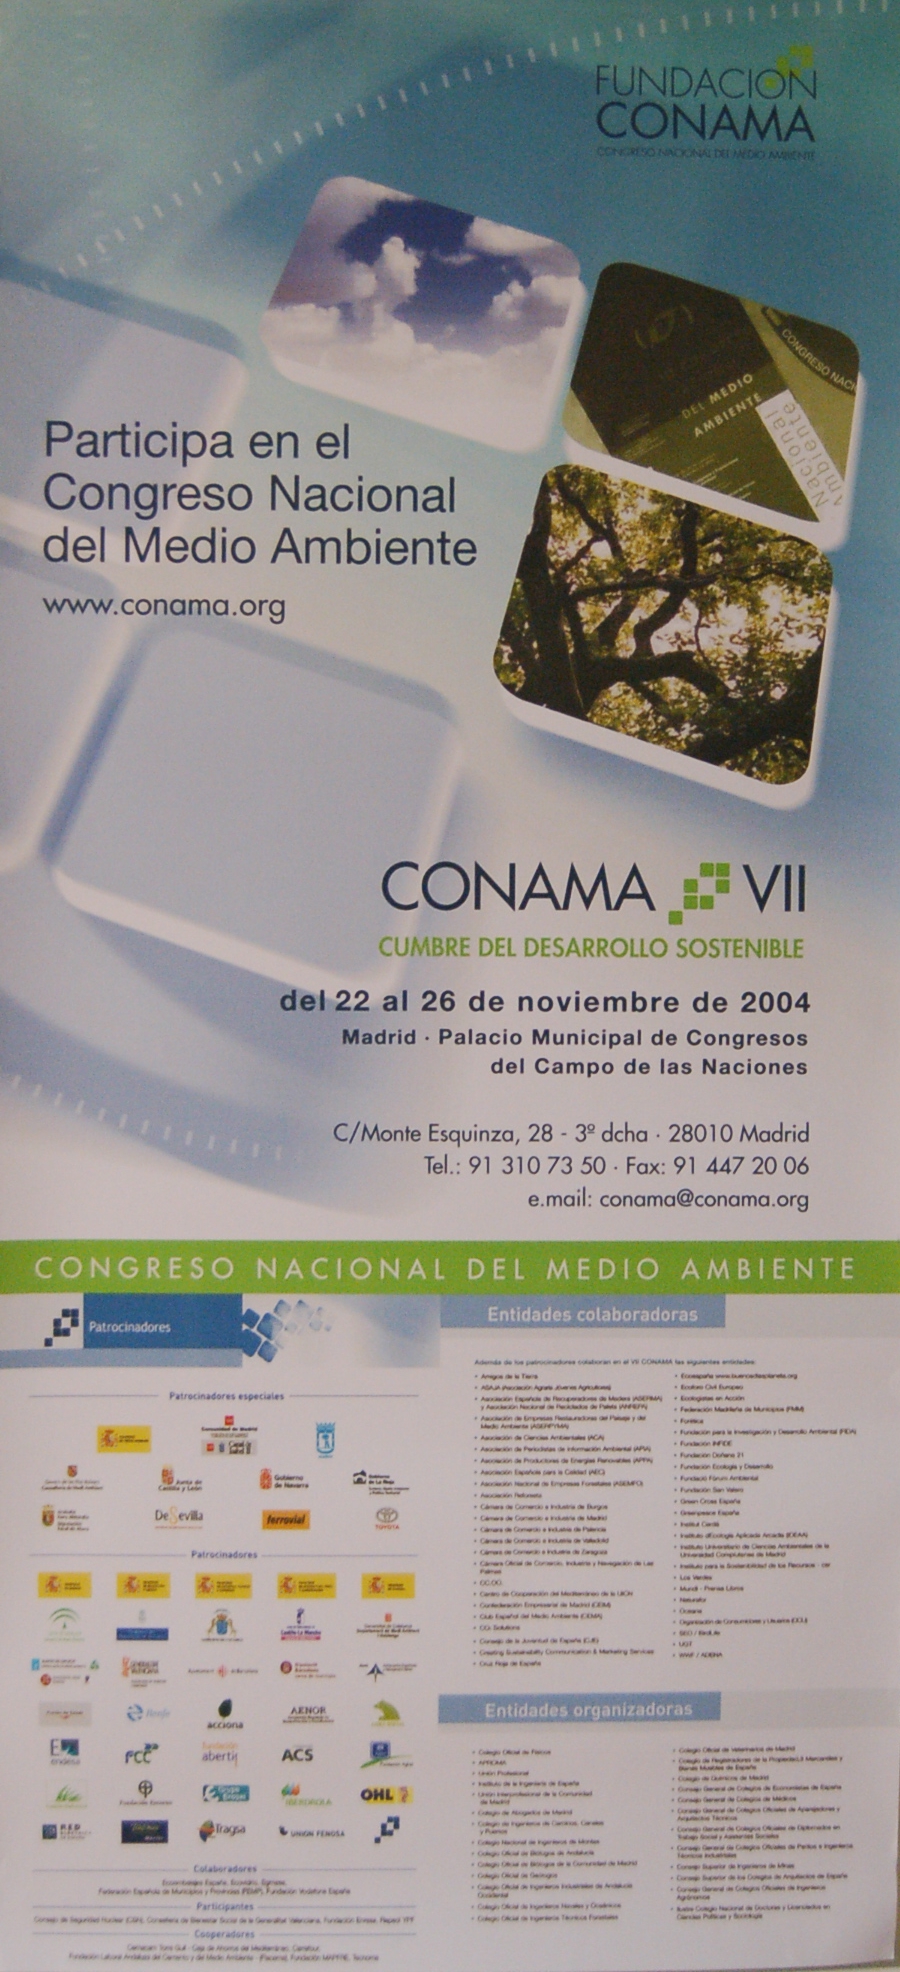 2004: Conama VII